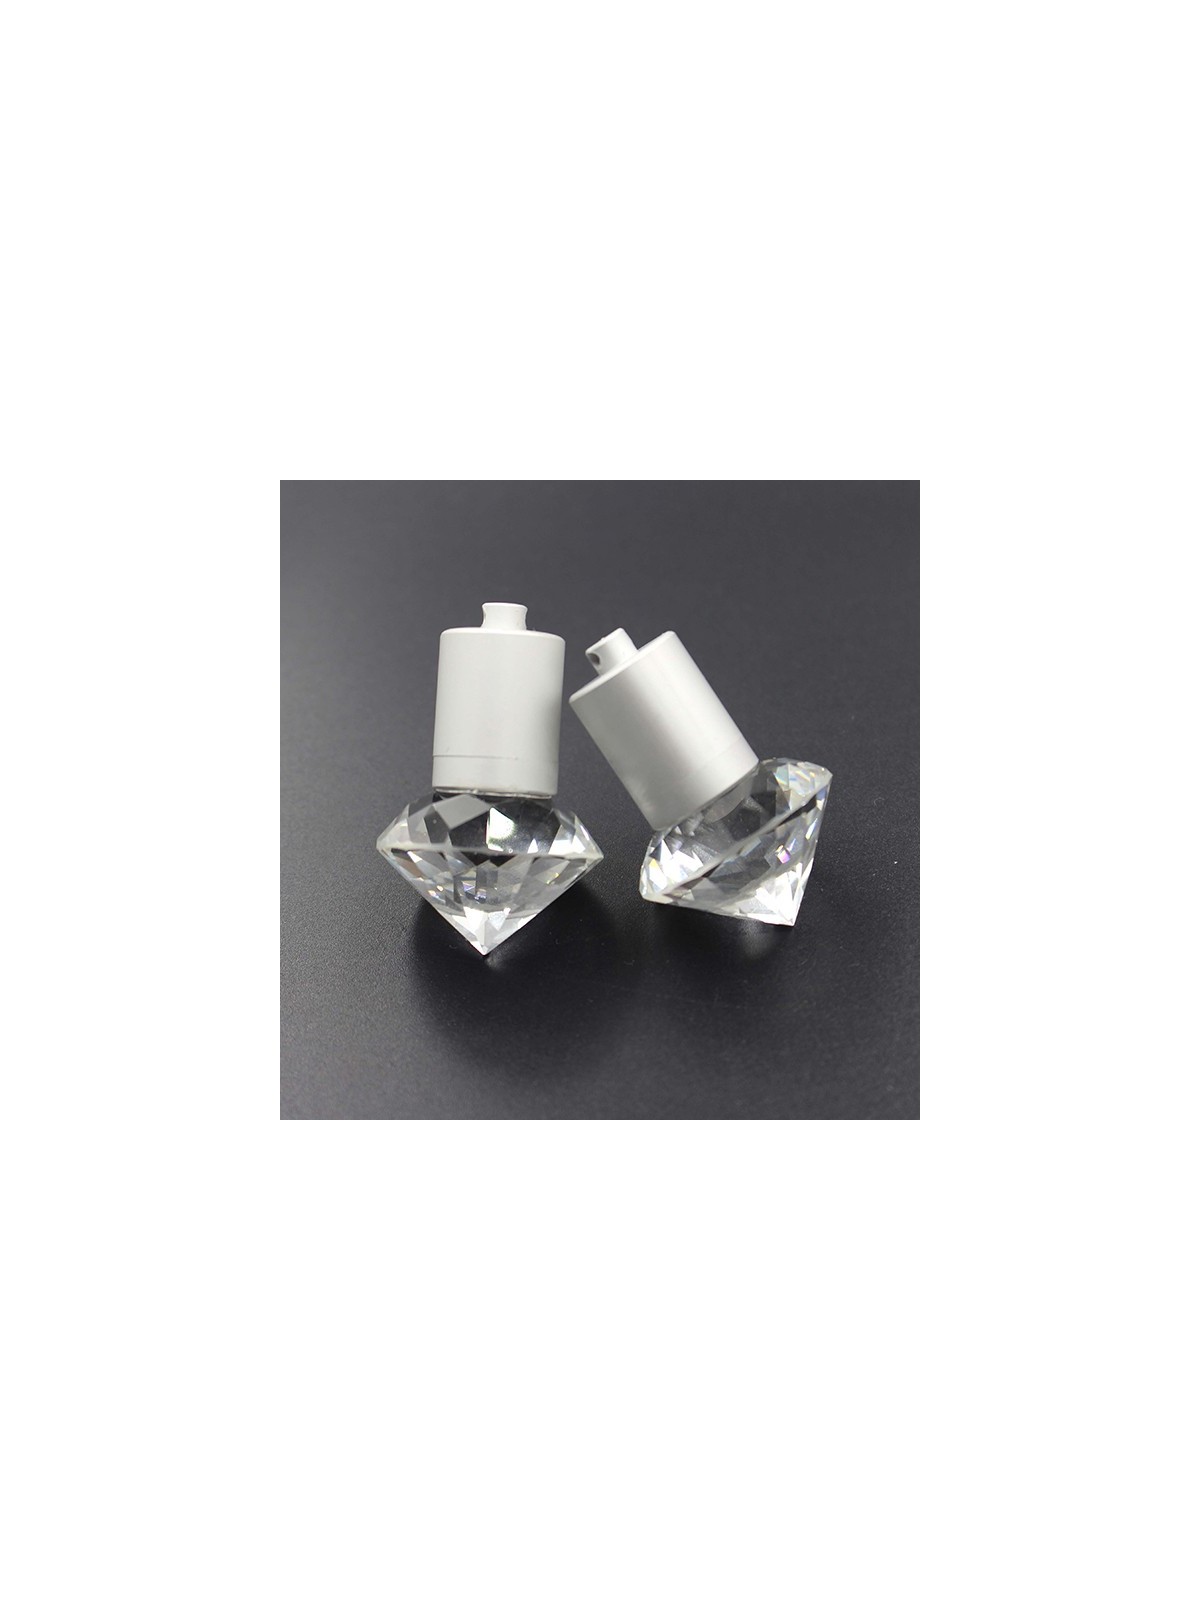 14-145 Clé USB diamant  personnalisé